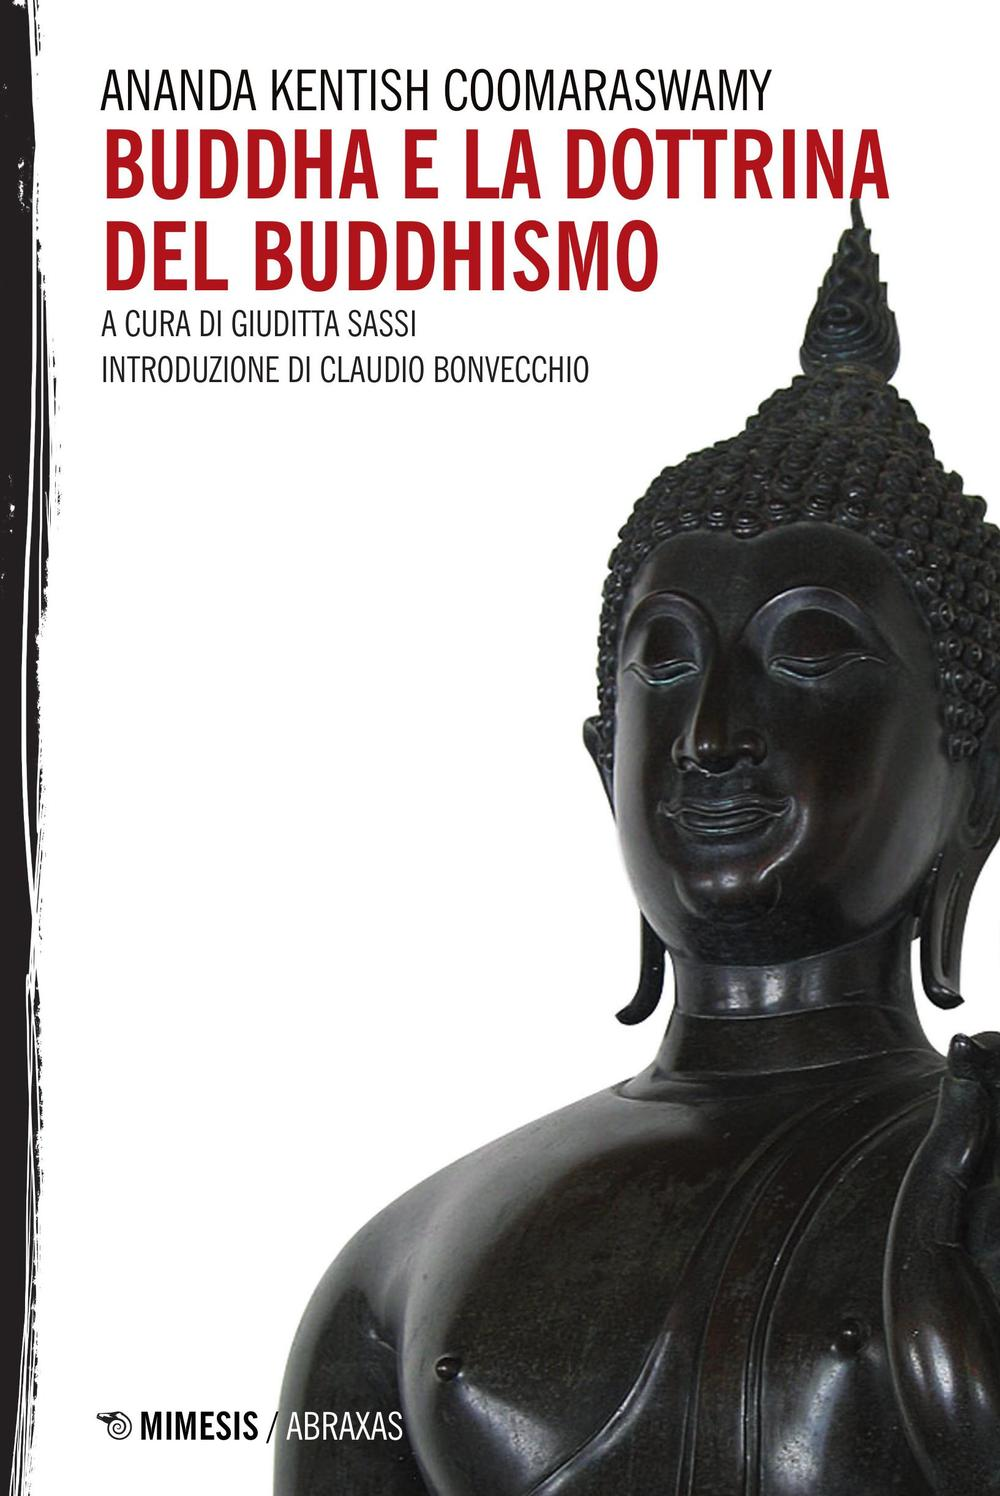 Image of Buddha e la dottrina del buddhismo